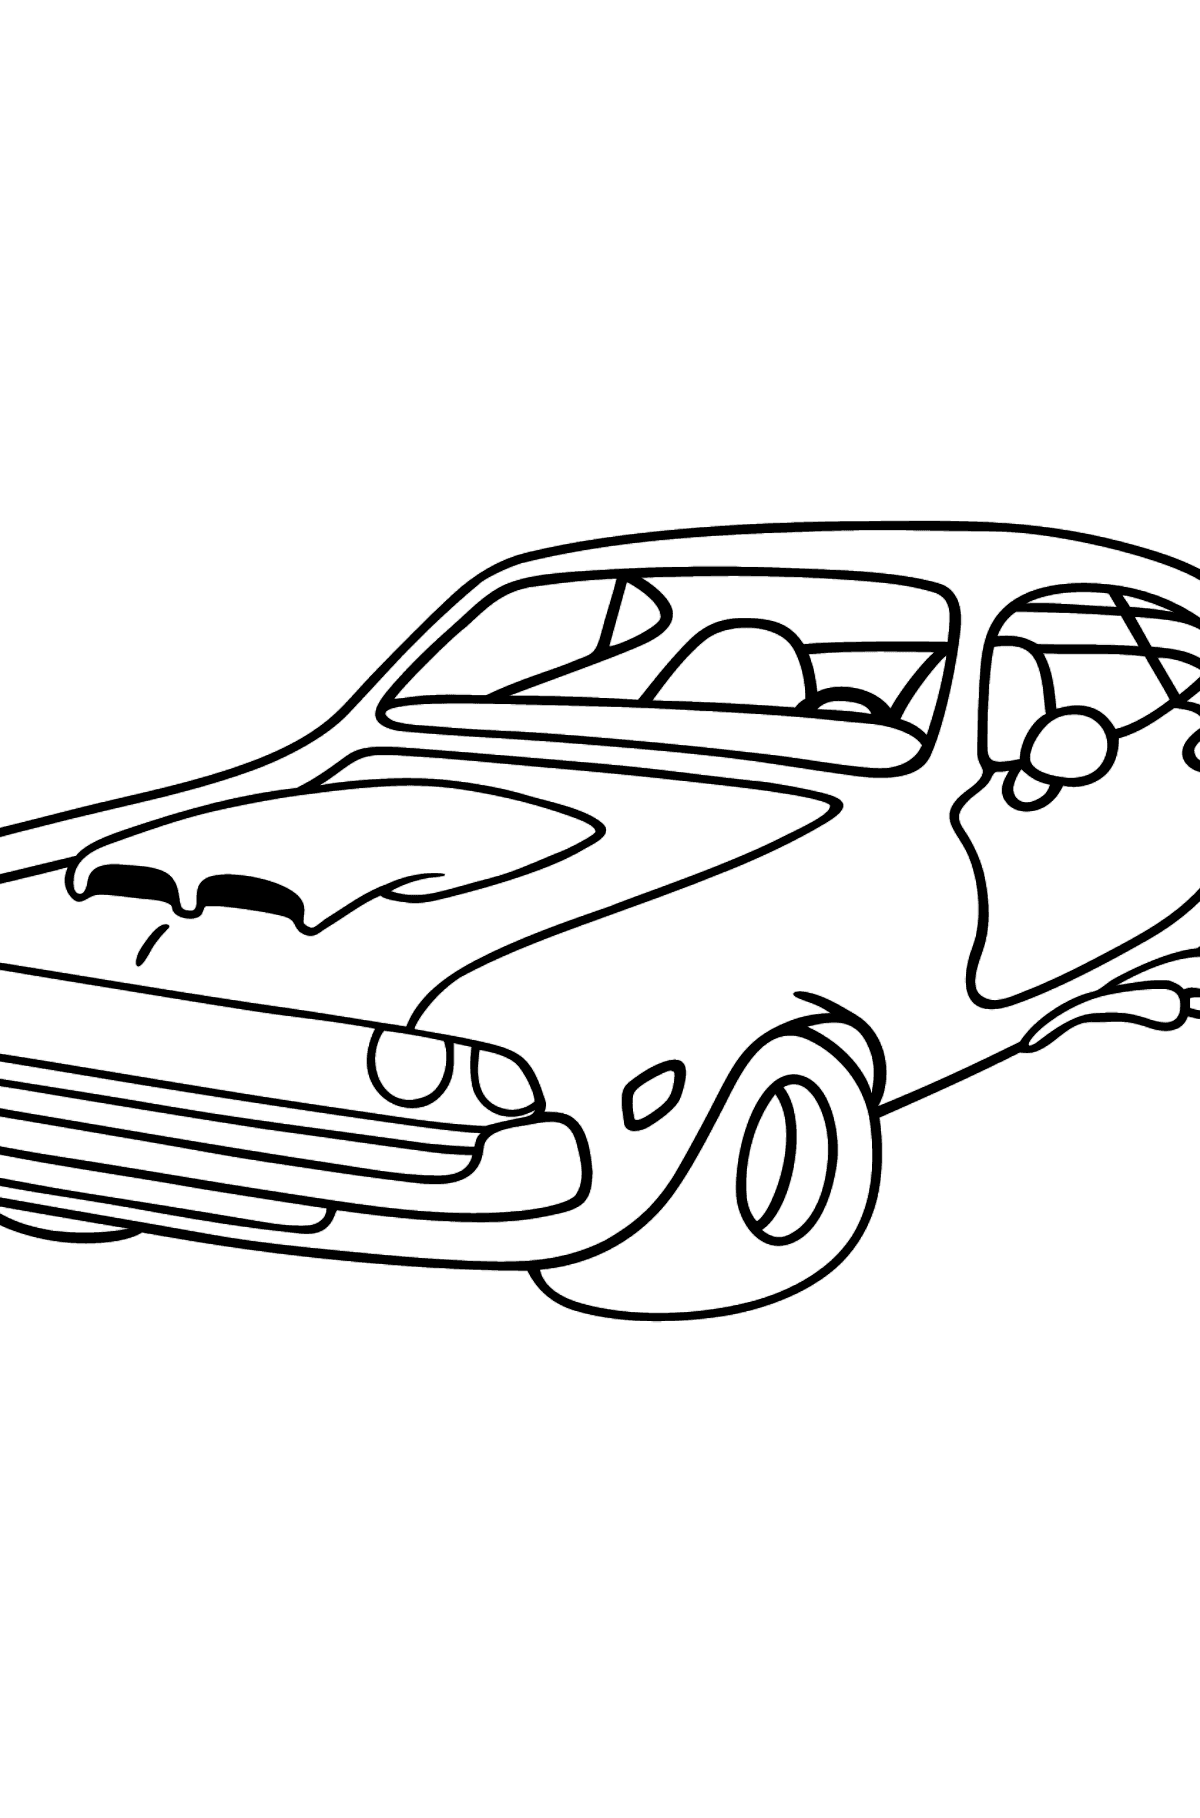 Раскраска Спортивная машина Chevrolet-Chevy - Картинки для Детей